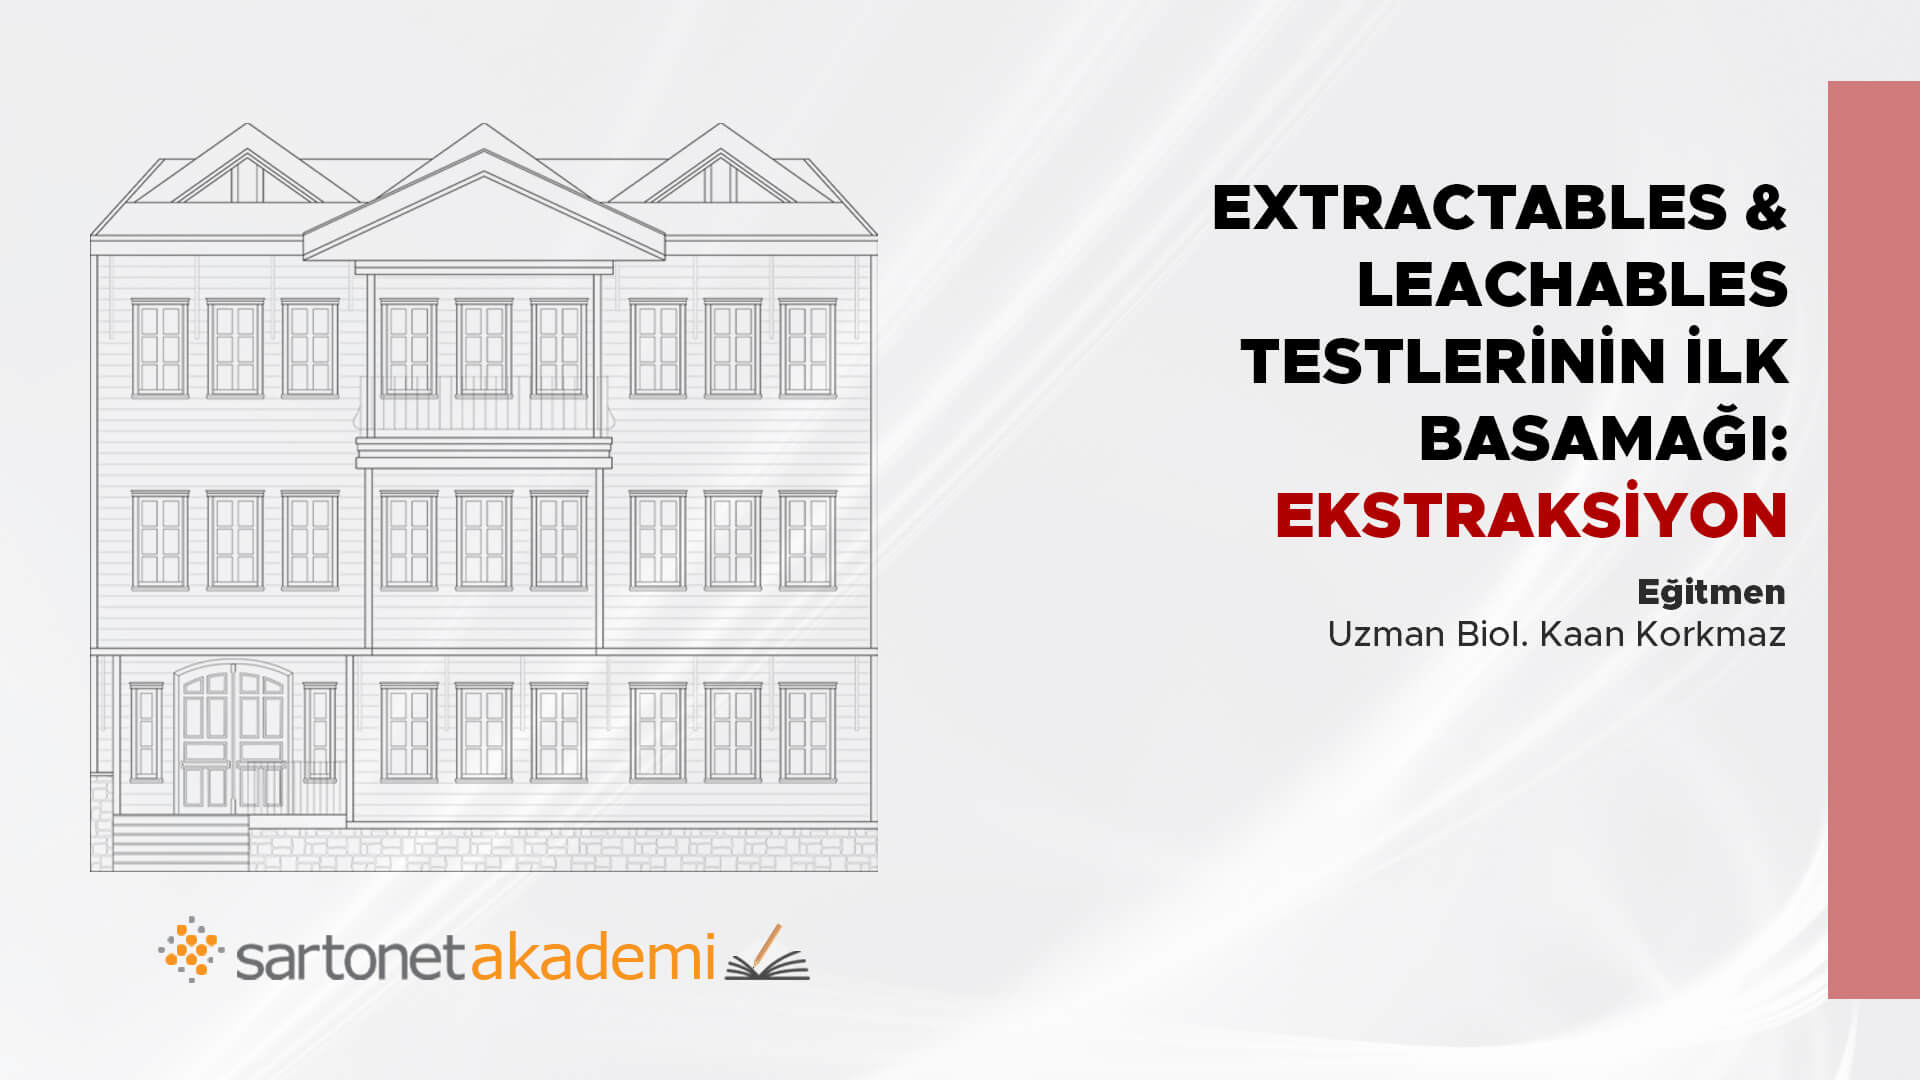 Extractables&Leachables testlerinin ilk basamağı: Ekstraksiyon